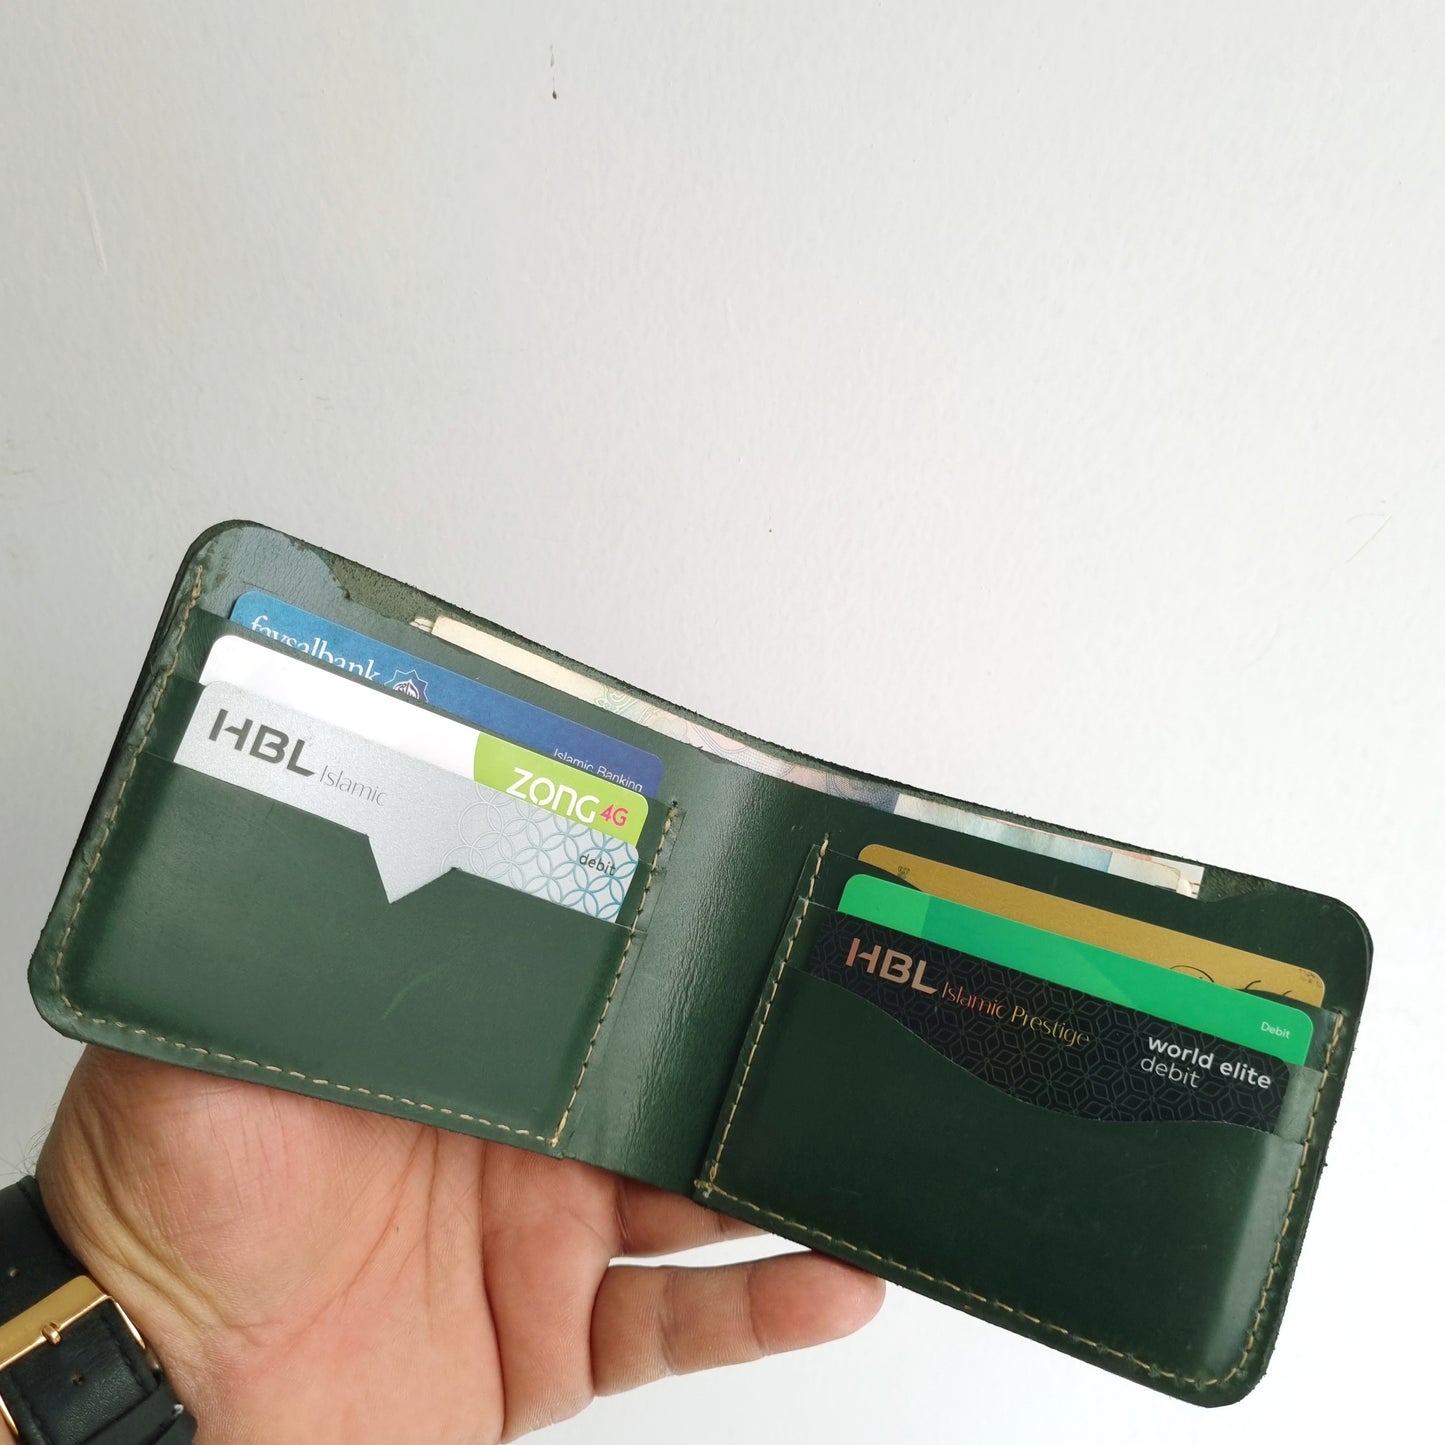 Wild Green Wallet.